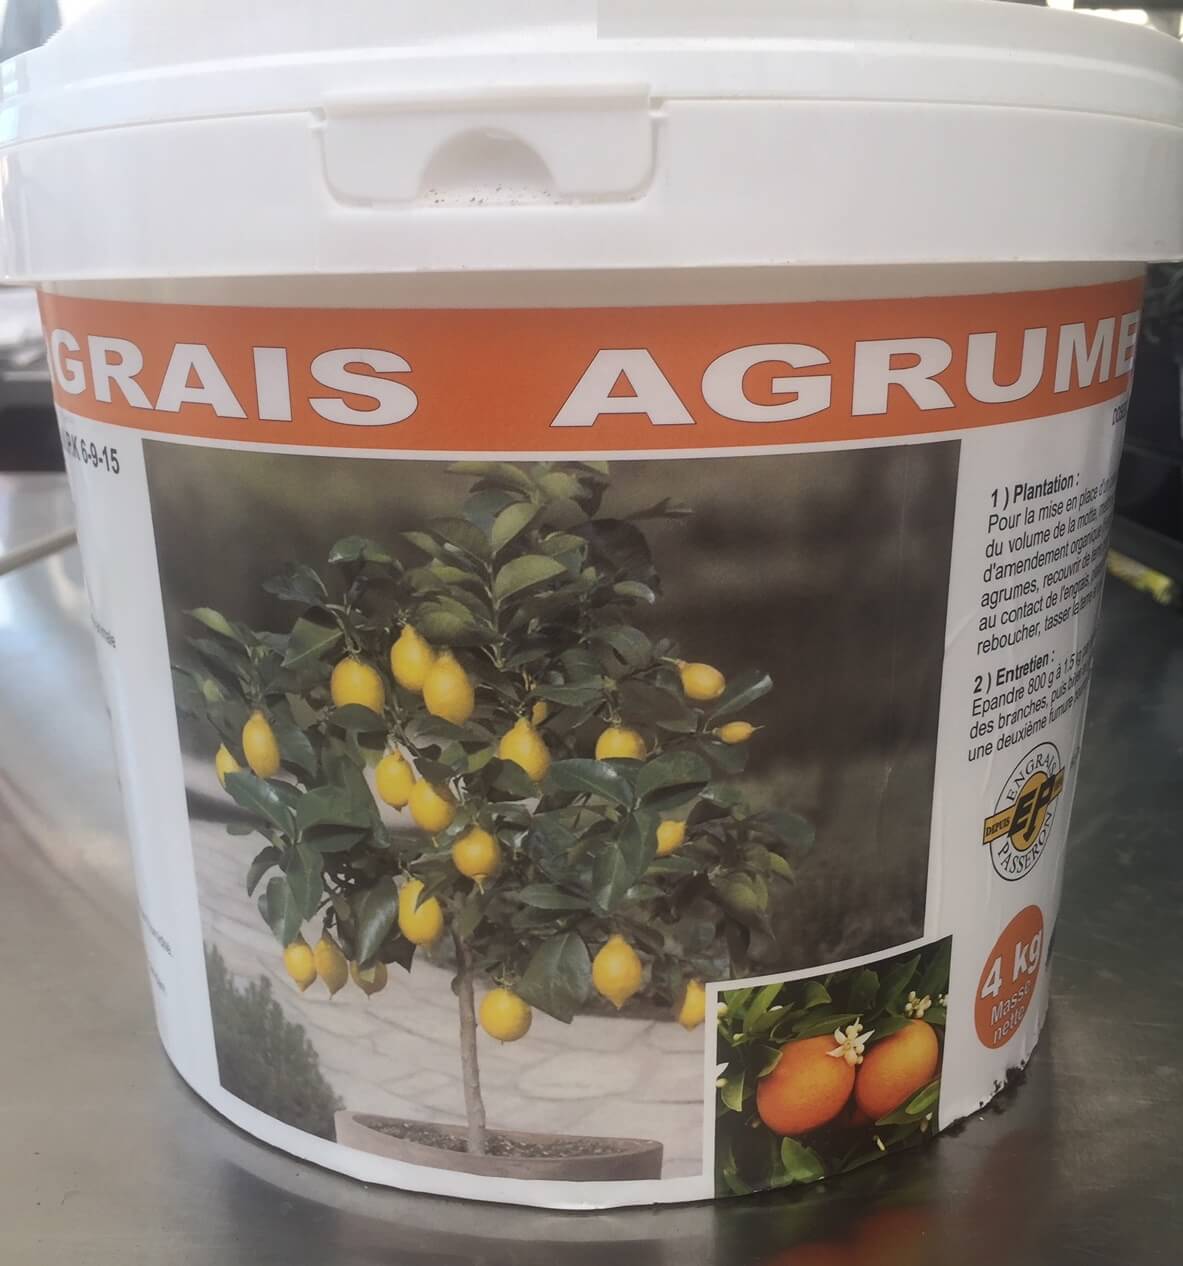 Naturen - Engrais agrumes 1,5 kg